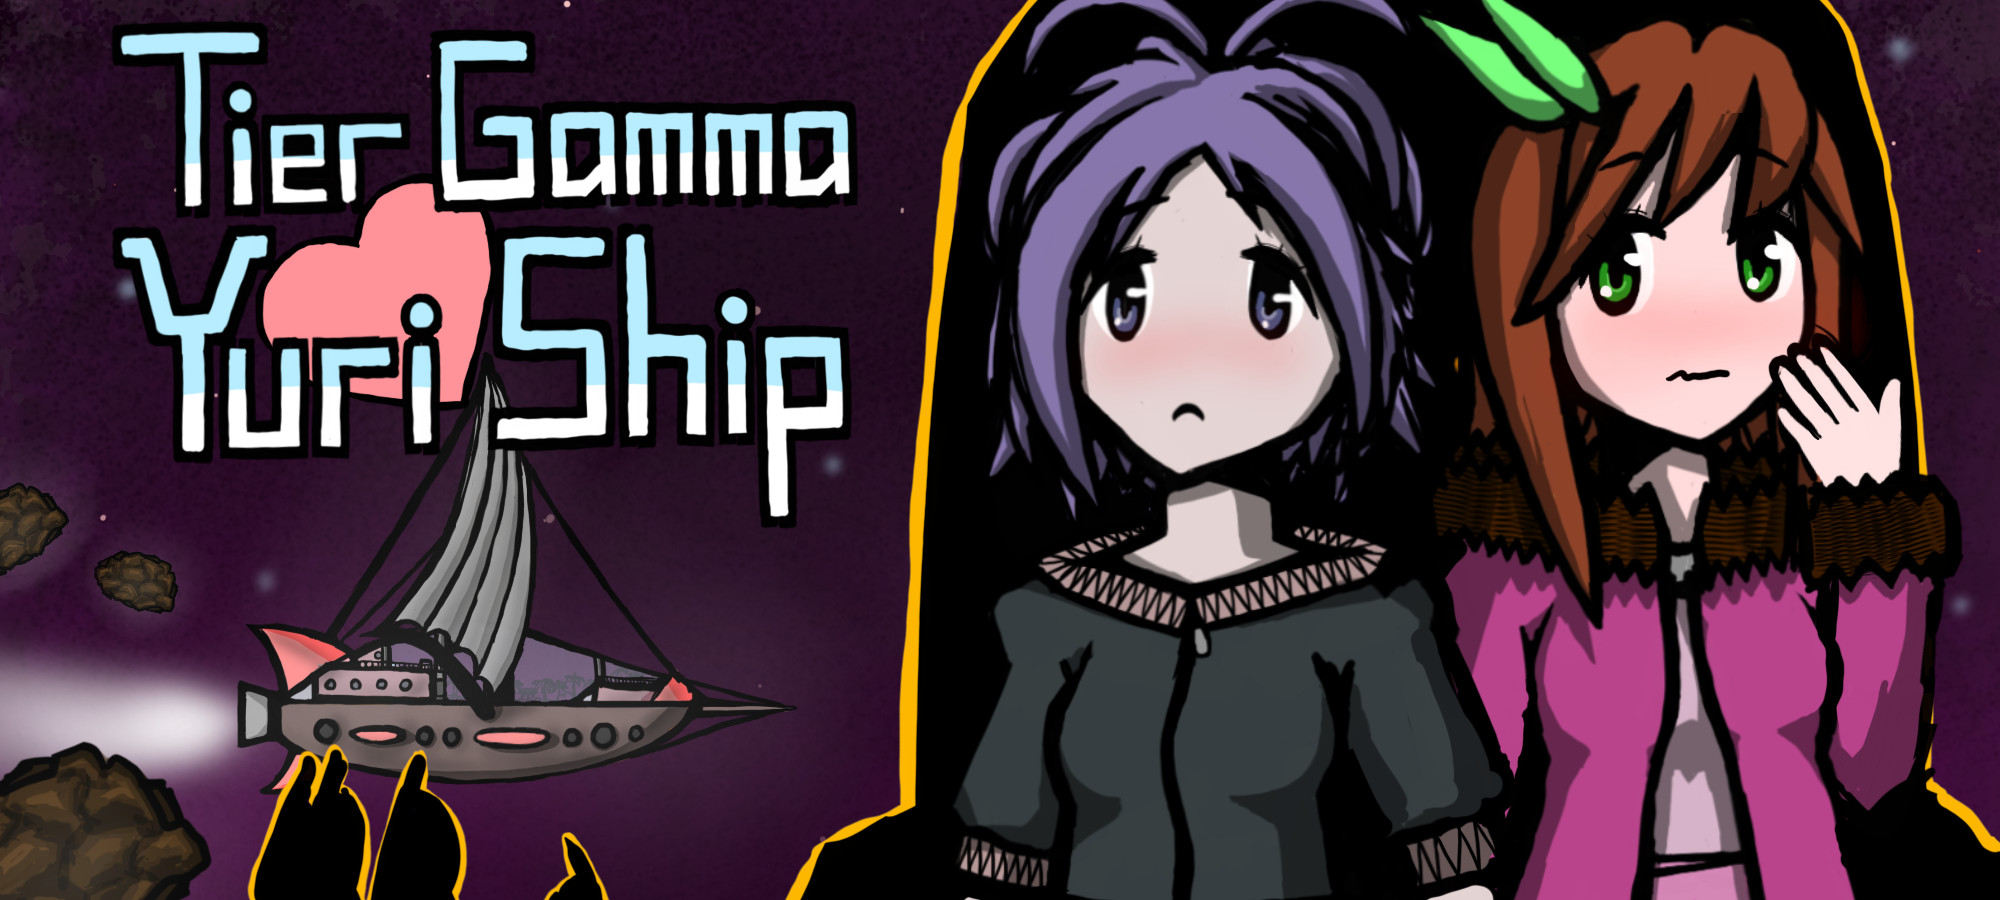 Tier Gamma Yuri Ship